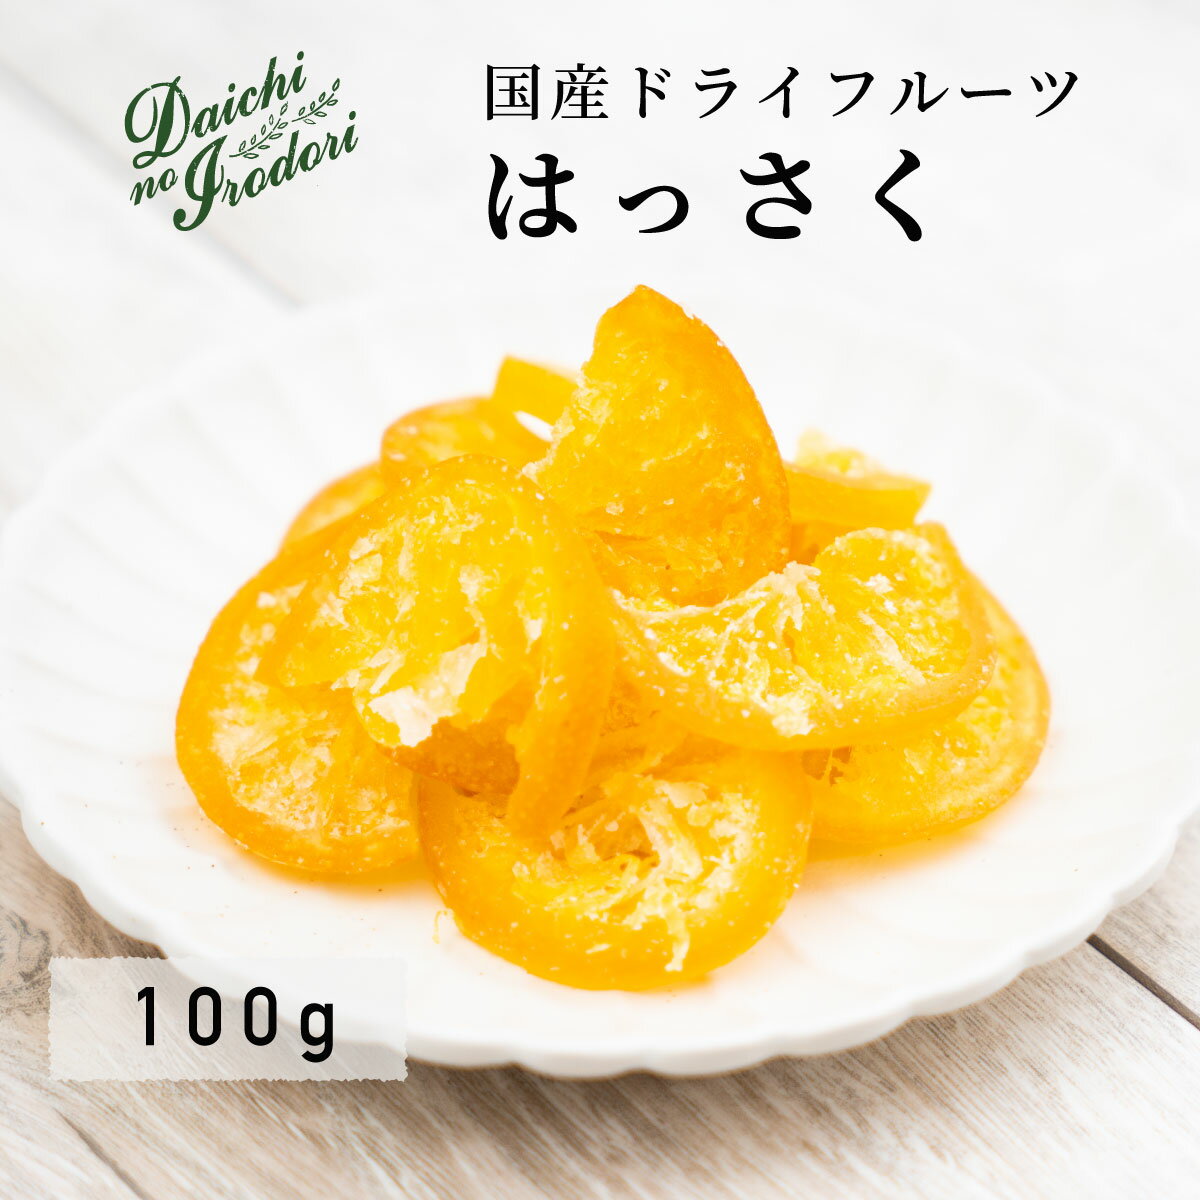 乾燥橘子果實 水果乾 日本產 八朔 100g x 1包 夾鏈袋裝日本必買 | 日本樂天熱銷